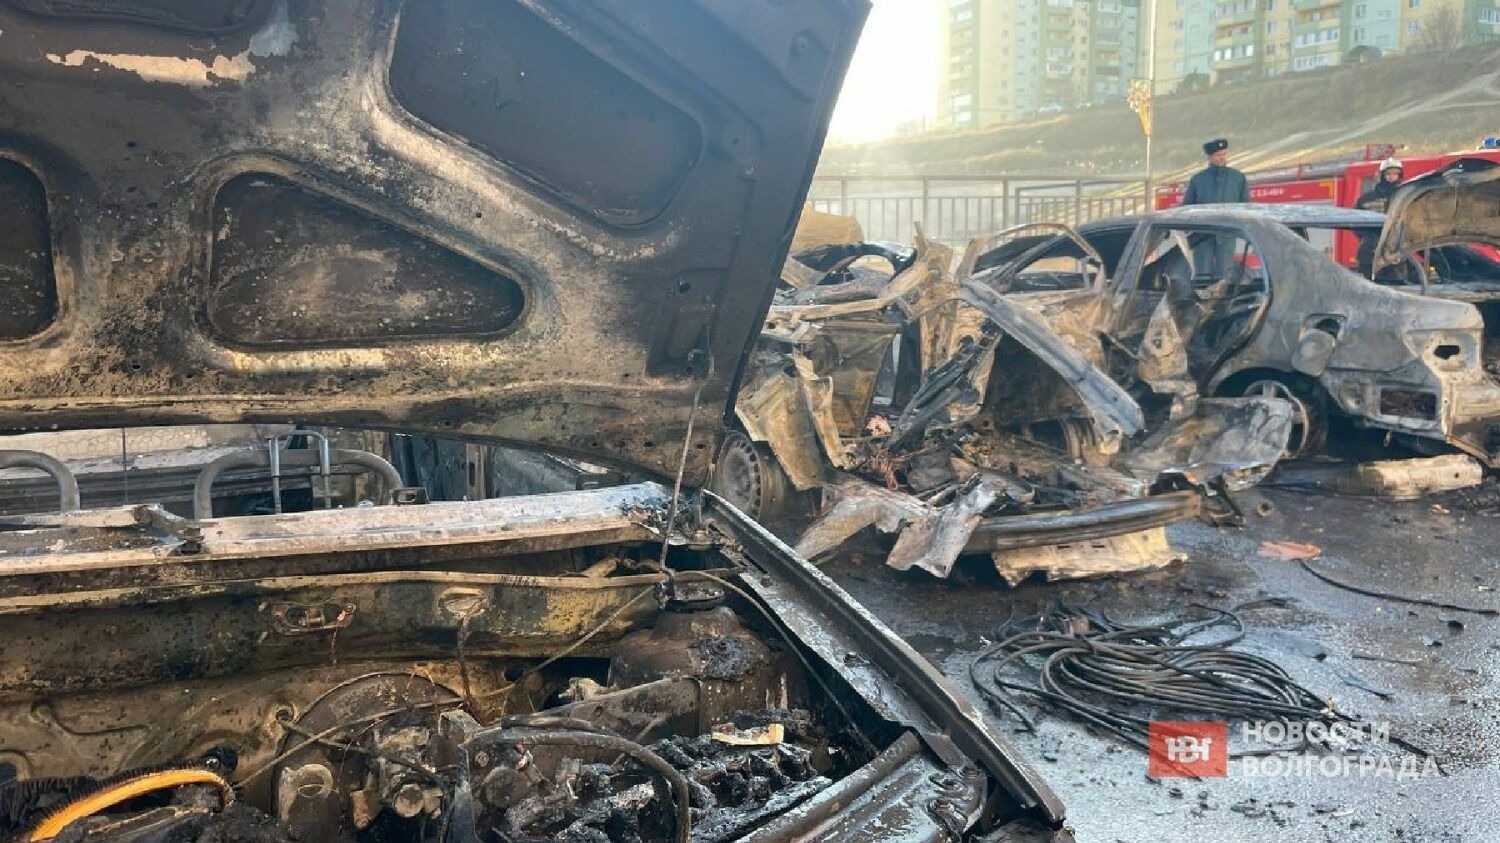 Владельцы сгоревших автомобилей написали коллективное обращение в прокуратуру.